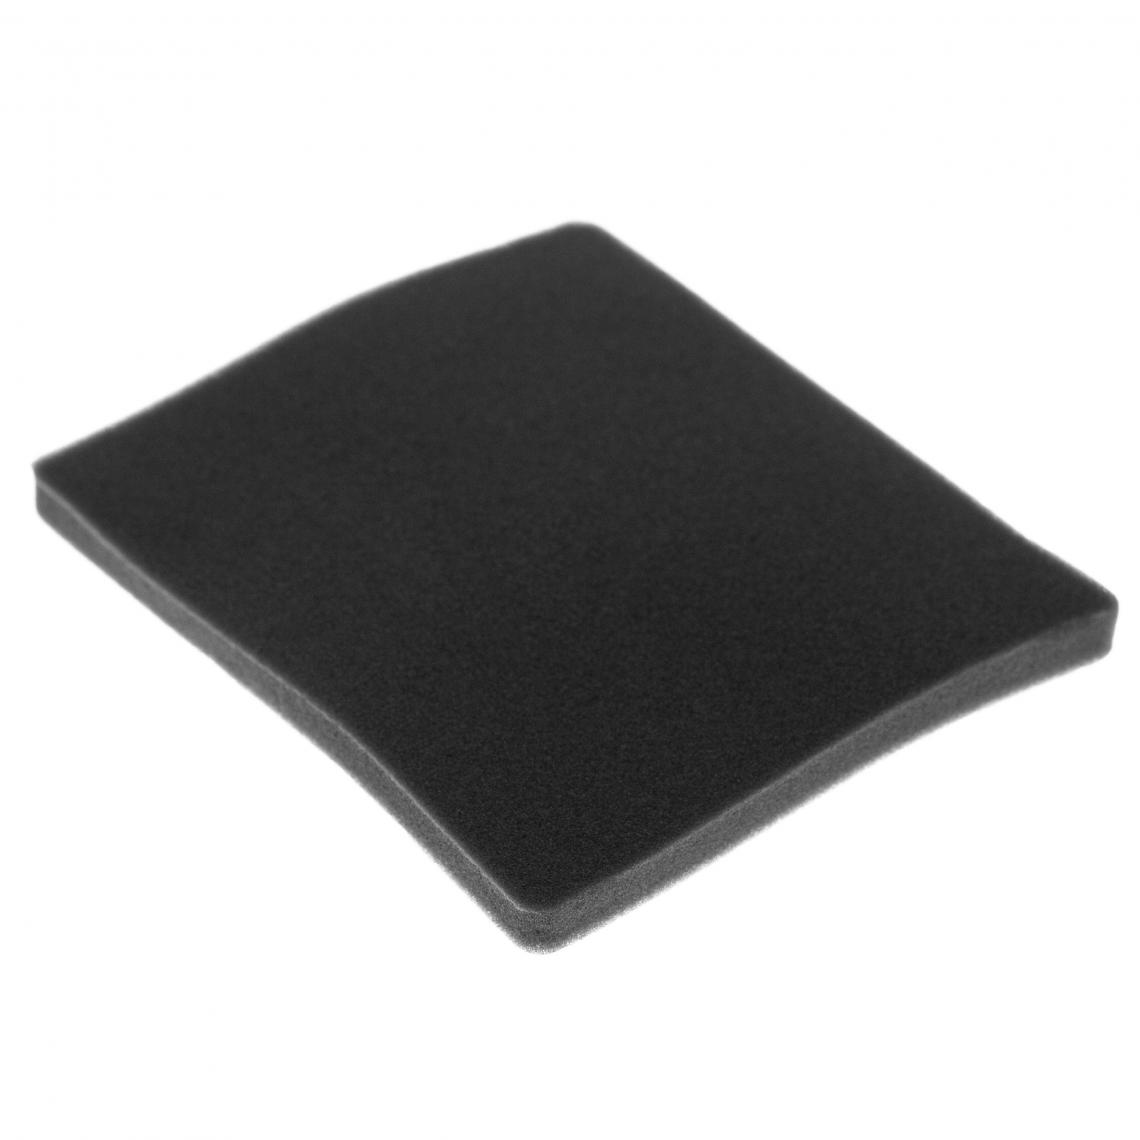 Vhbw - vhbw Filtre compatible avec Electrolux ZCX6207 (910288715) aspirateur - filtre de sortie d'air (filtre éponge), noir - Accessoire entretien des sols